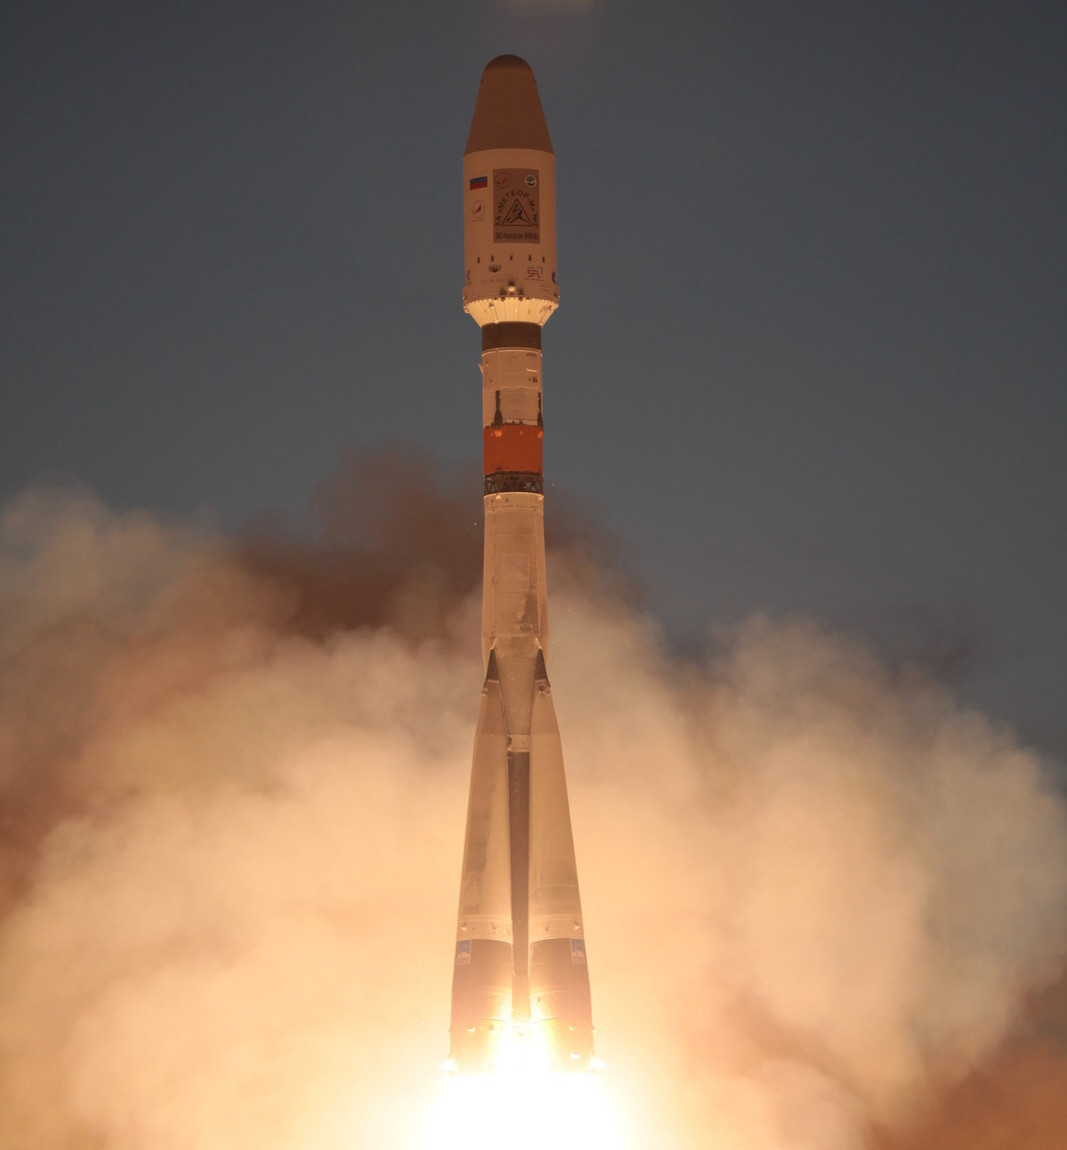 Пуск РН «Союз-2.1б» с РБ «Фрегат», КА «Метеор-М» № 2 и шестью малыми КА «МКА-ФКИ», «SkySat-2», «DX-1», «TechDemoSat-1», «UKube-1», «AISSAT-2». 08.07.2014